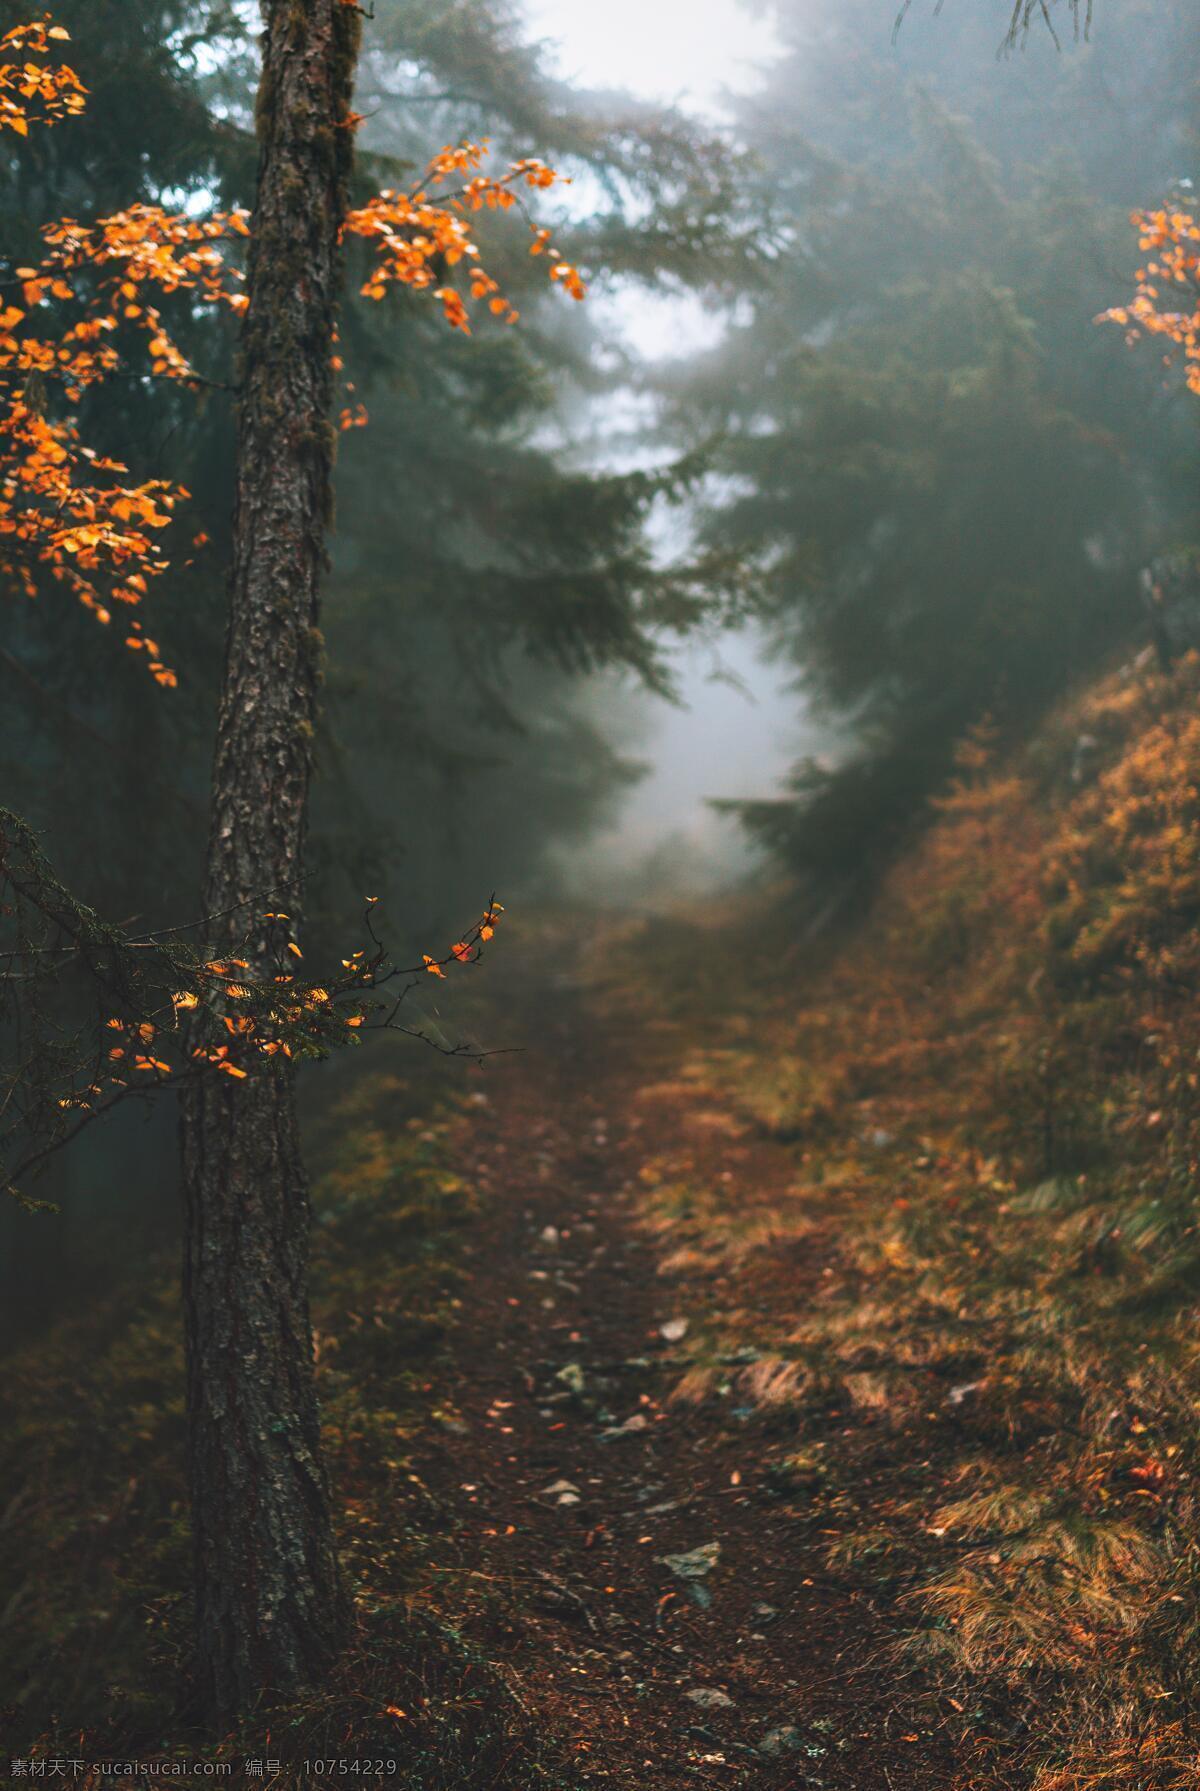 迷雾森林 森林 秋天 秋季 树木 树林 迷雾 自然景观 林中小径 高清摄影图 自然风景